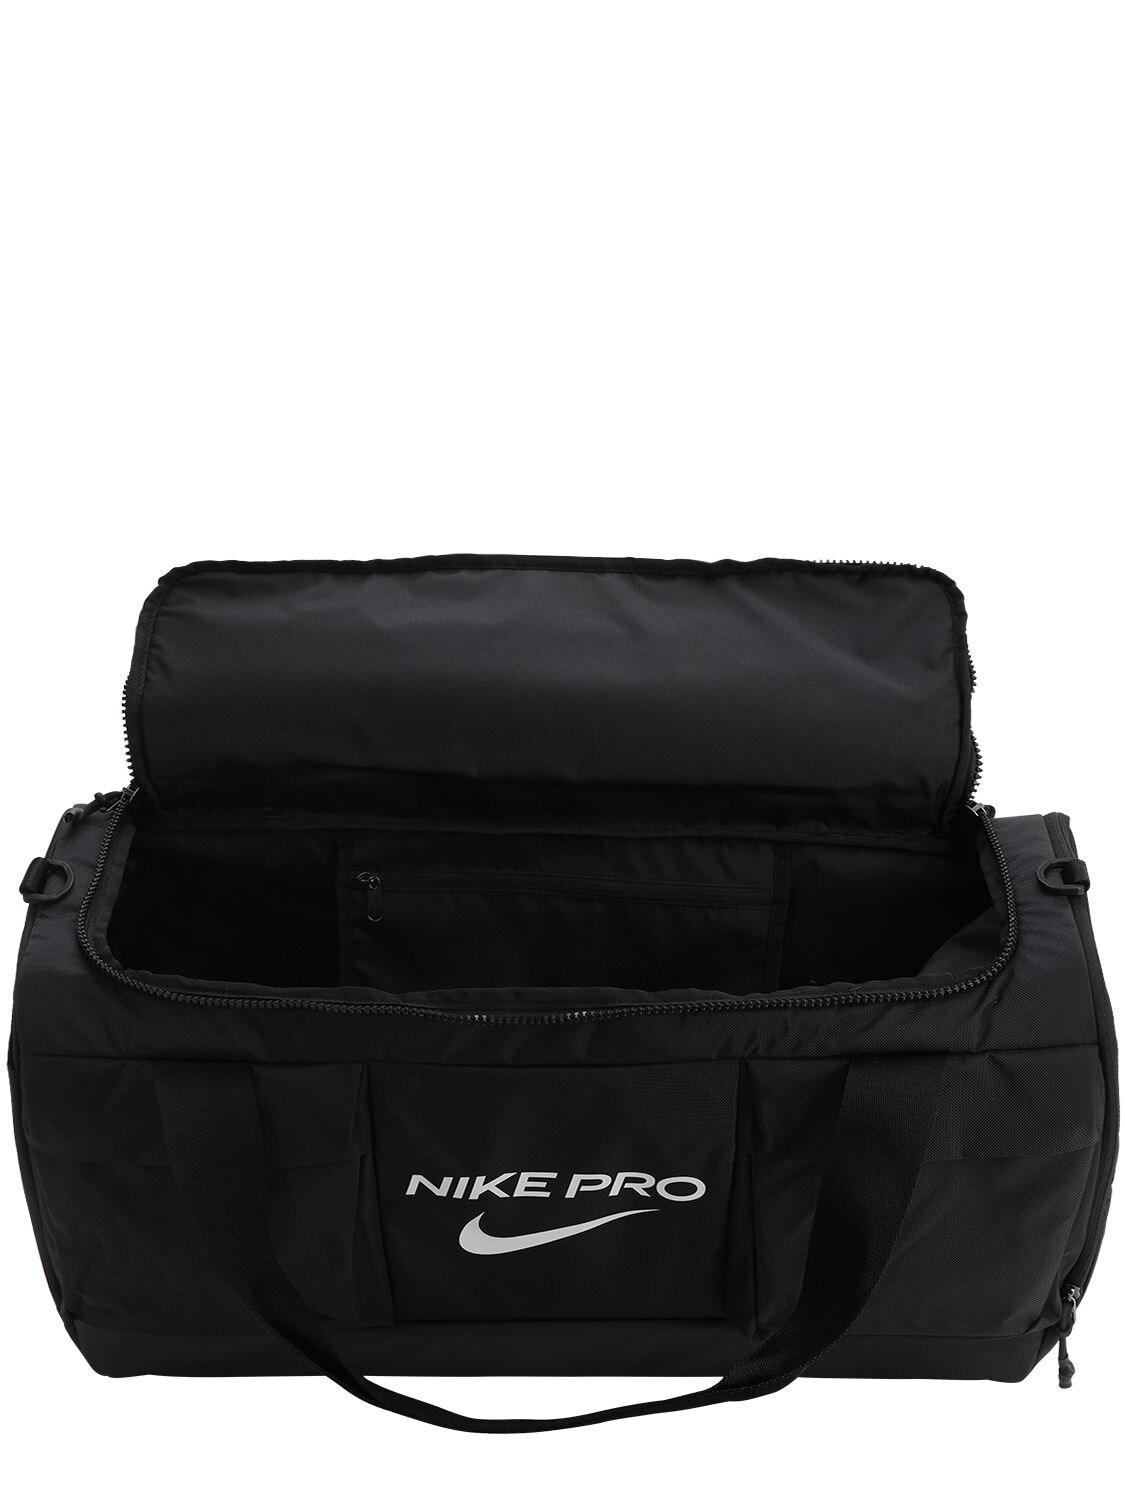 Nike Pro Vapor Power Medium Duffle Bag Black for Men | Lyst